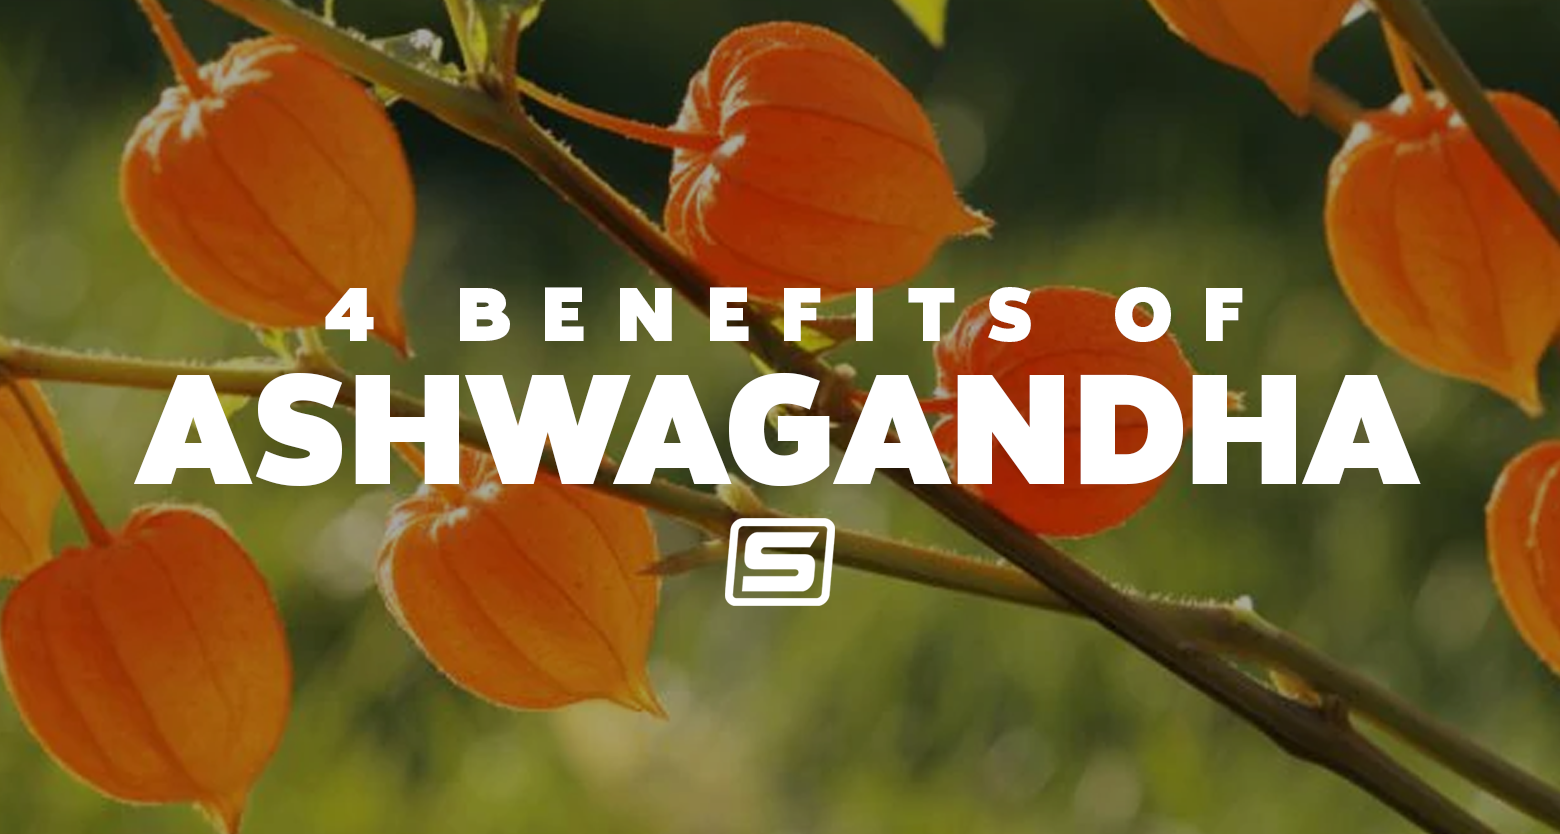 4 Benefits of Ashwagandha